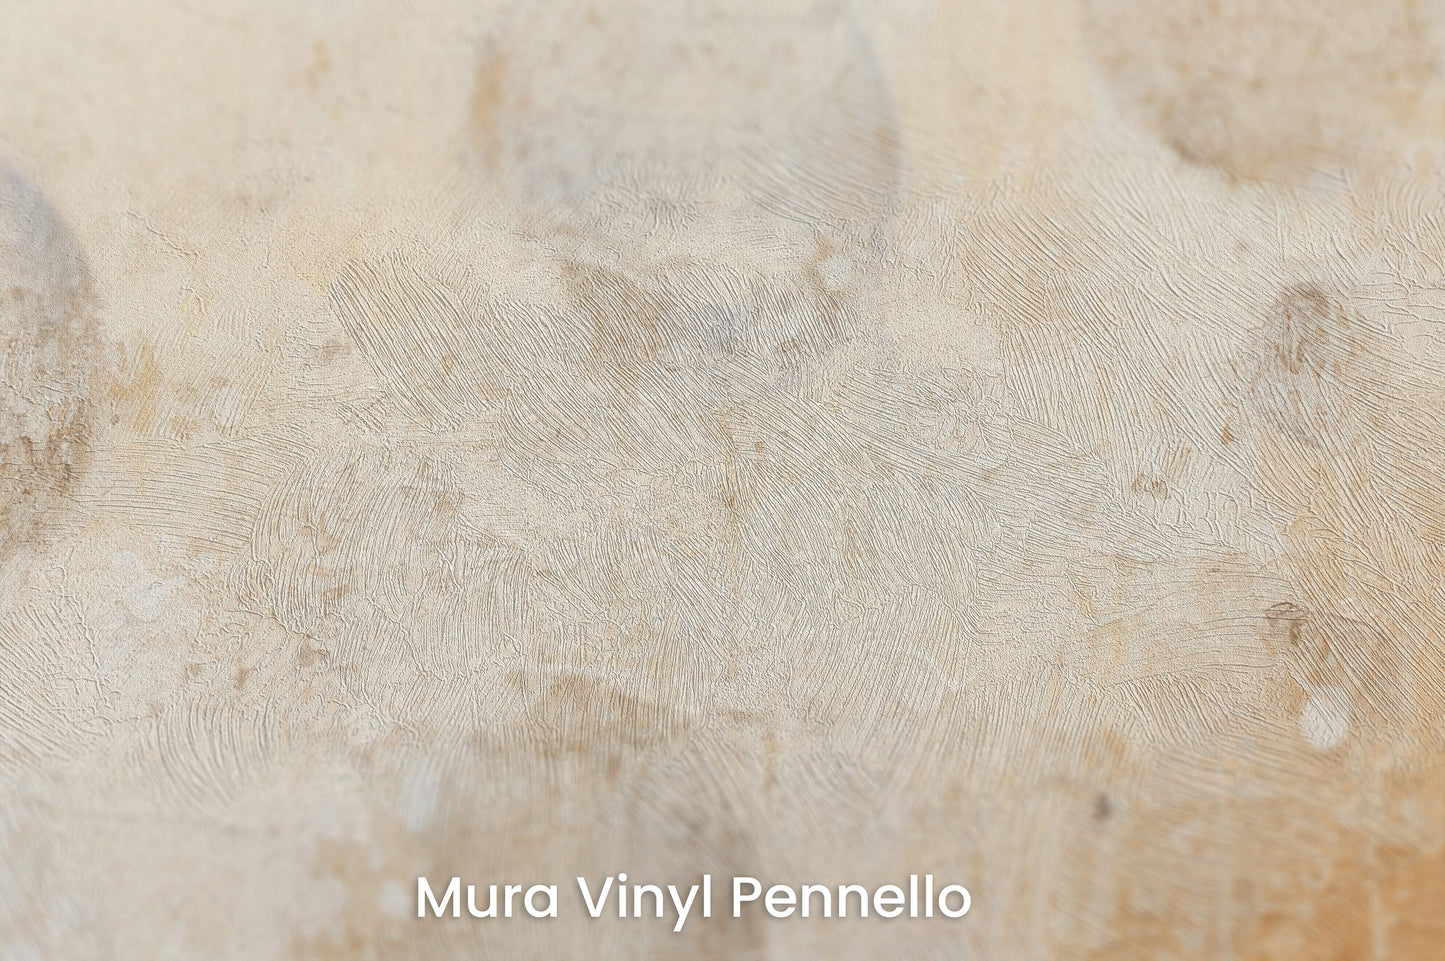 Zbliżenie na artystyczną fototapetę o nazwie SUNBLEACHED SOLAR FLARES na podłożu Mura Vinyl Pennello - faktura pociągnięć pędzla malarskiego.